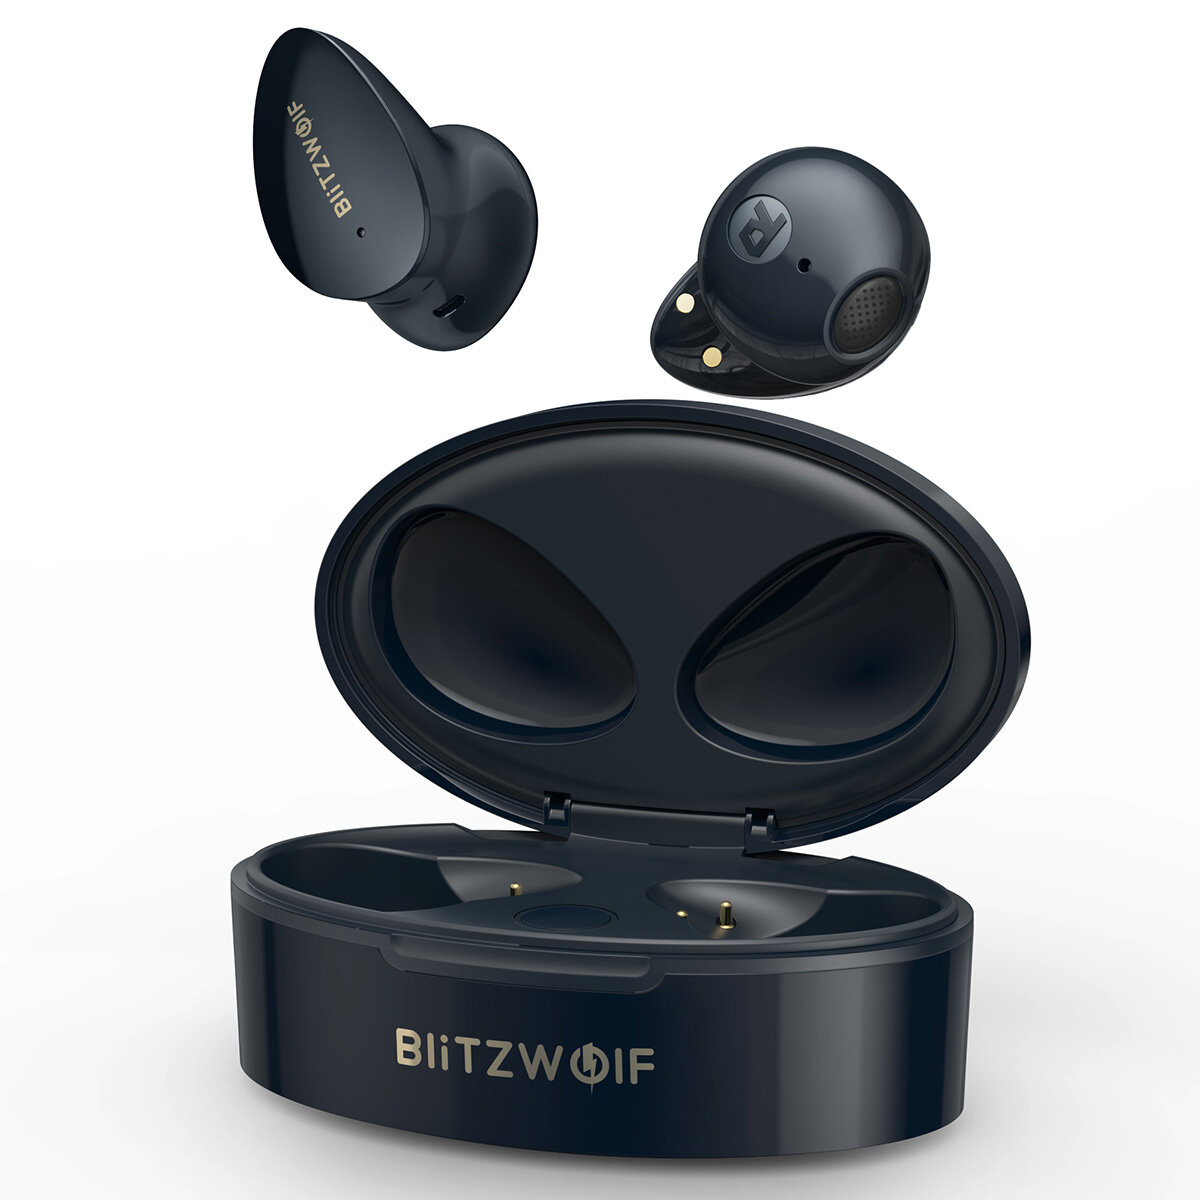 Στα 15,11€ χαμηλότερη τιμή ως σήμερα από αποθήκη Κίνας | BlitzWolf® BW-FPE2 TWS Earphone bluetooth Earbuds 13mm Large Drivers AAC HiFi Sound 20h Long Endurance Half-in-ear Headphone with Mic